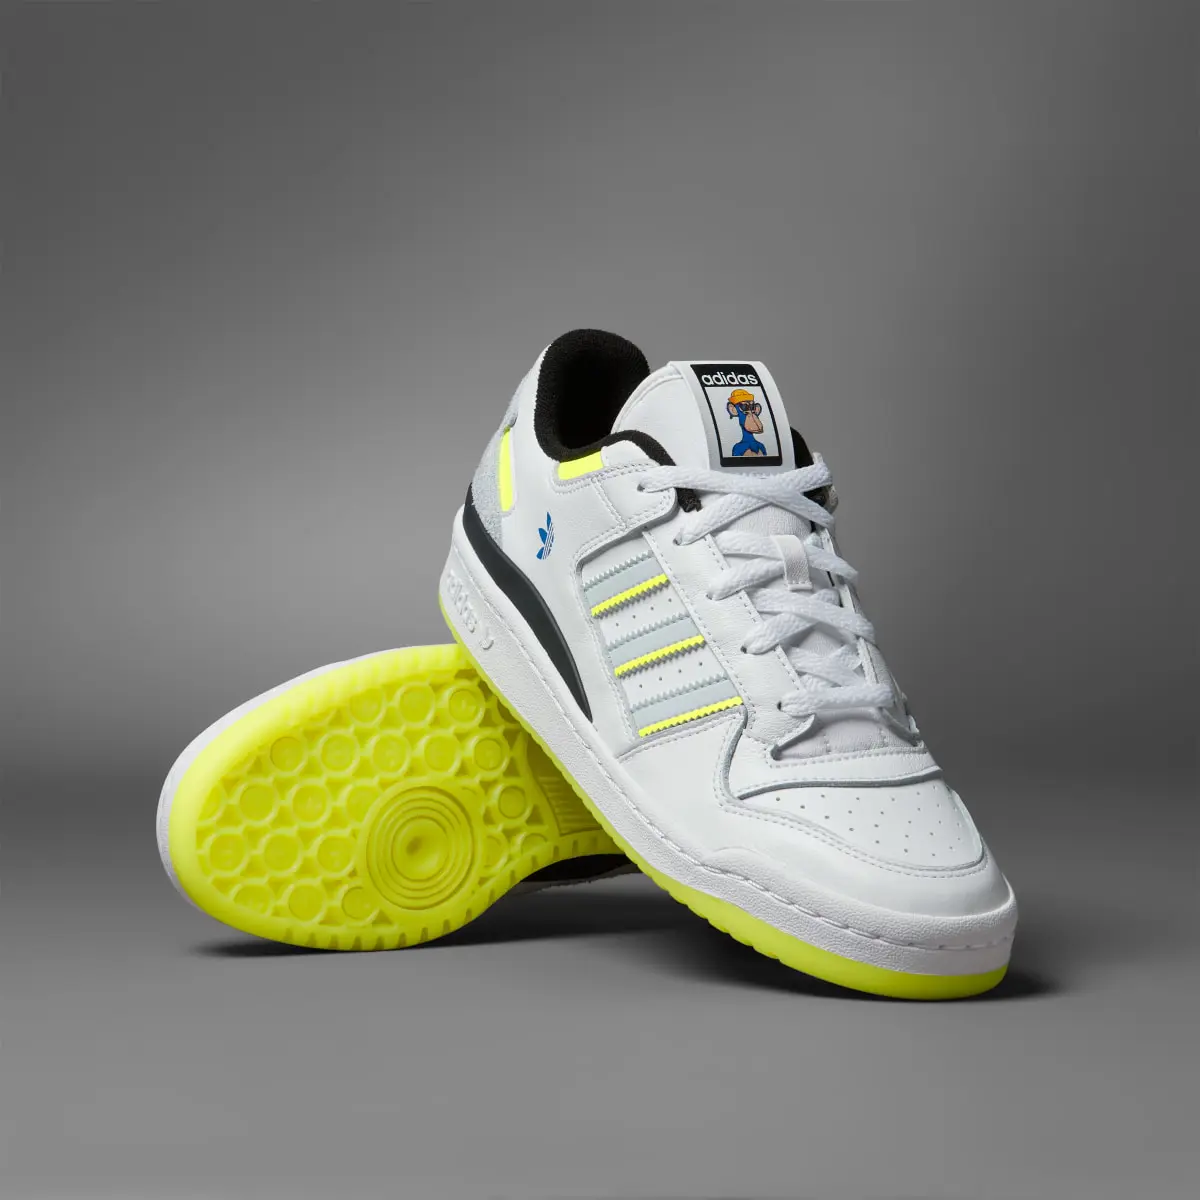 Adidas Forum Low CL x Indigo Herz Schuh. 1